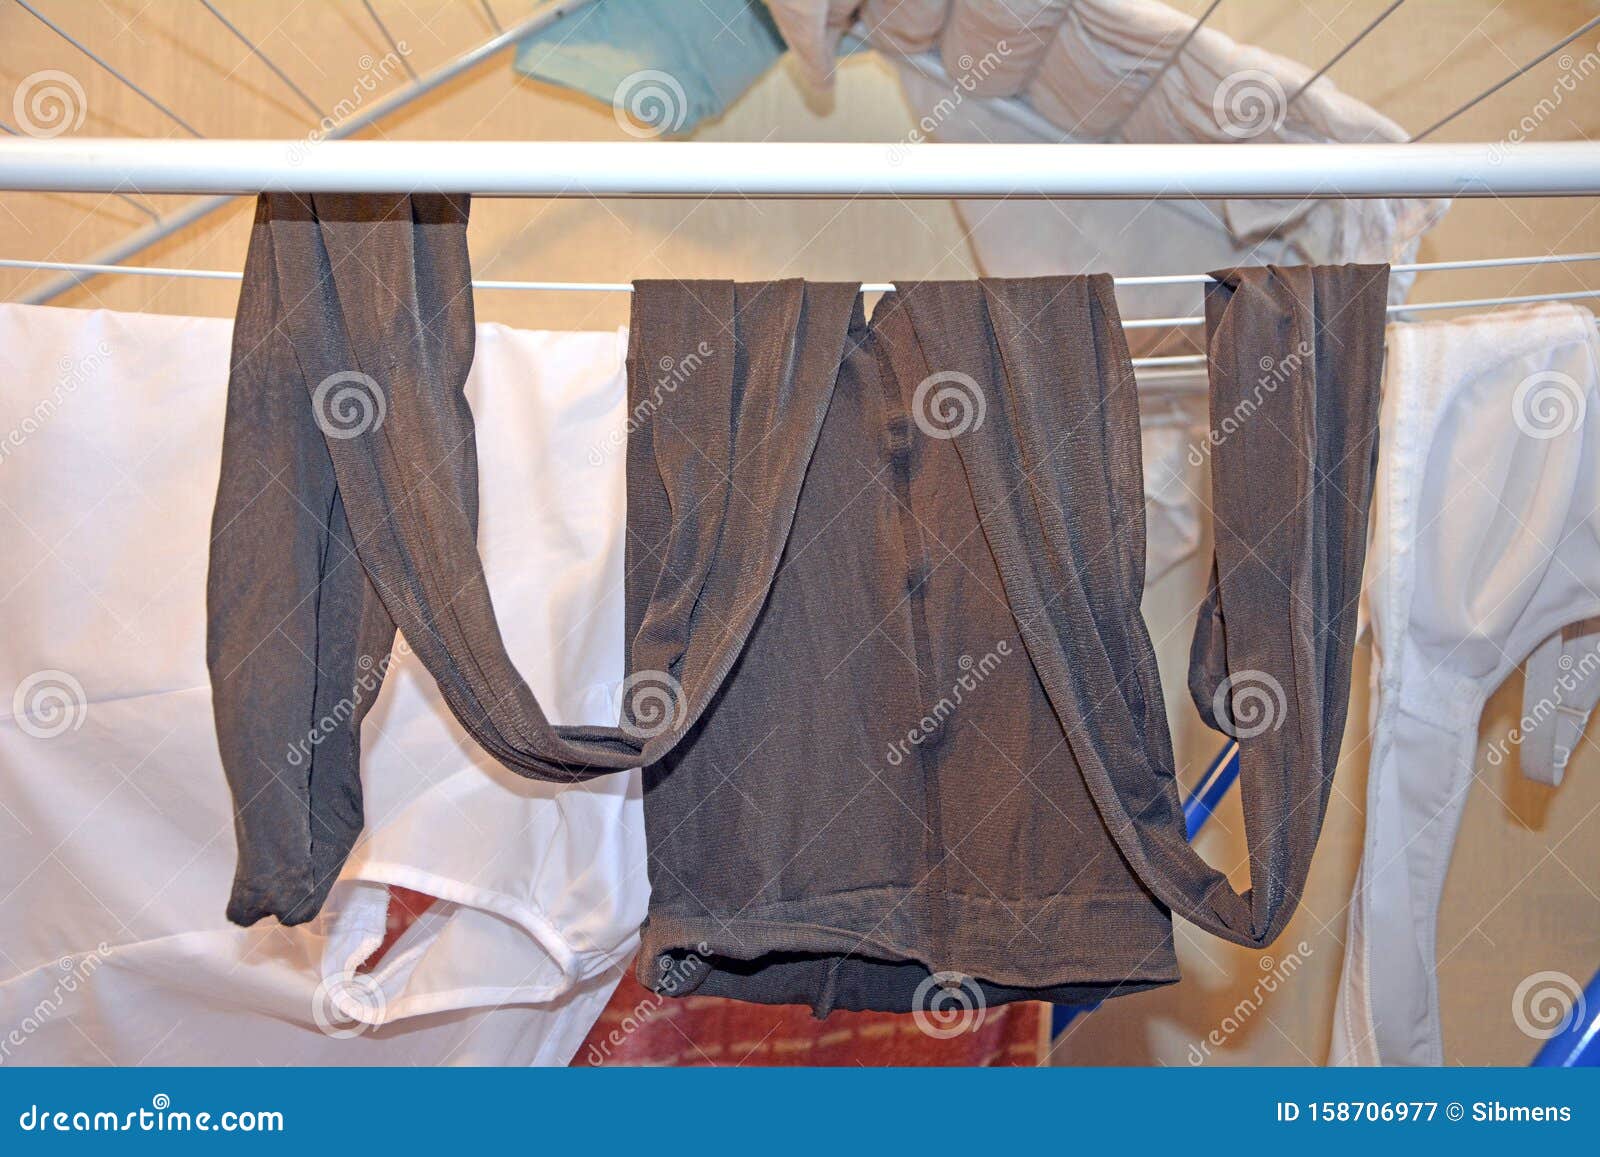 Women`s Used Nylon Pantyhose after Washing. Fetish. Stock Image - Image of  washing, worn: 158706977